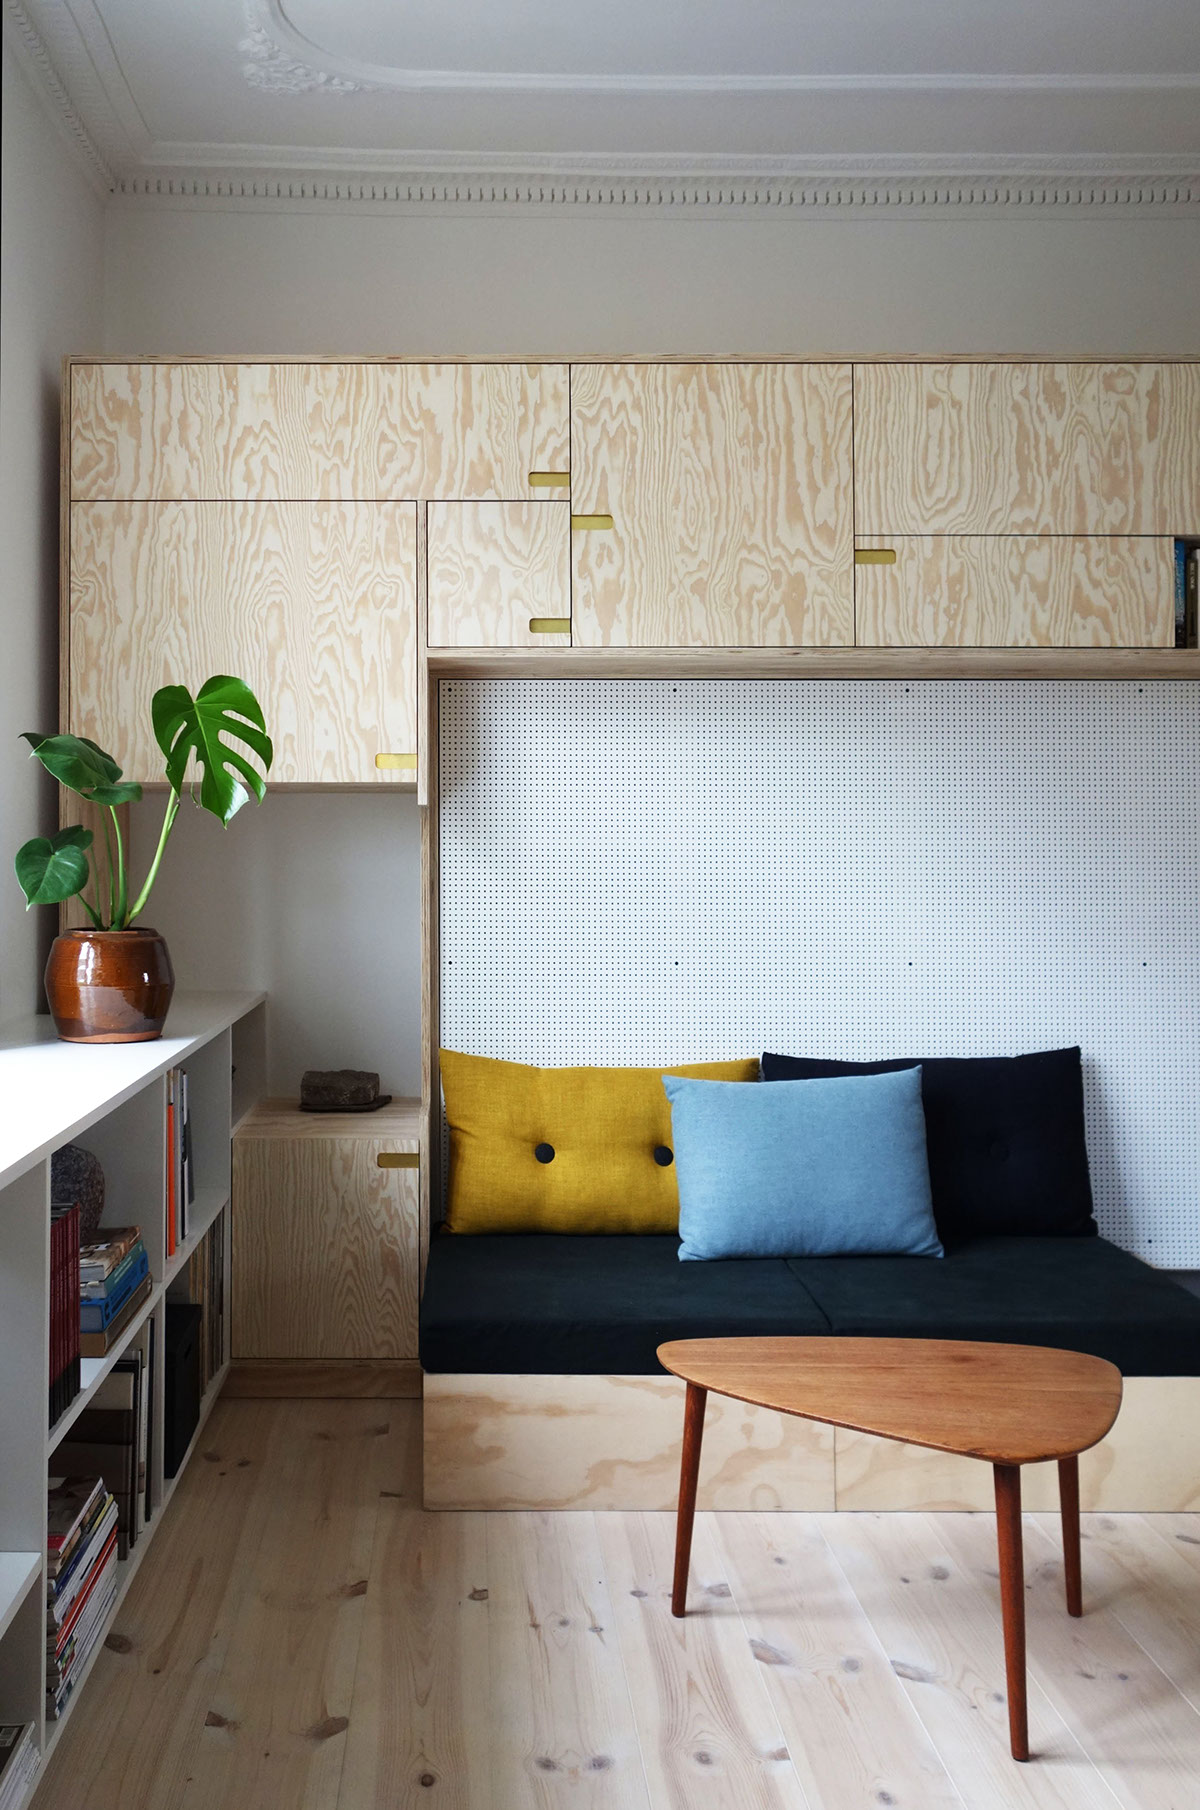 Murphey bed Built-In closet vægseng design furniture fold ud seng Interior plywood krydsfiner